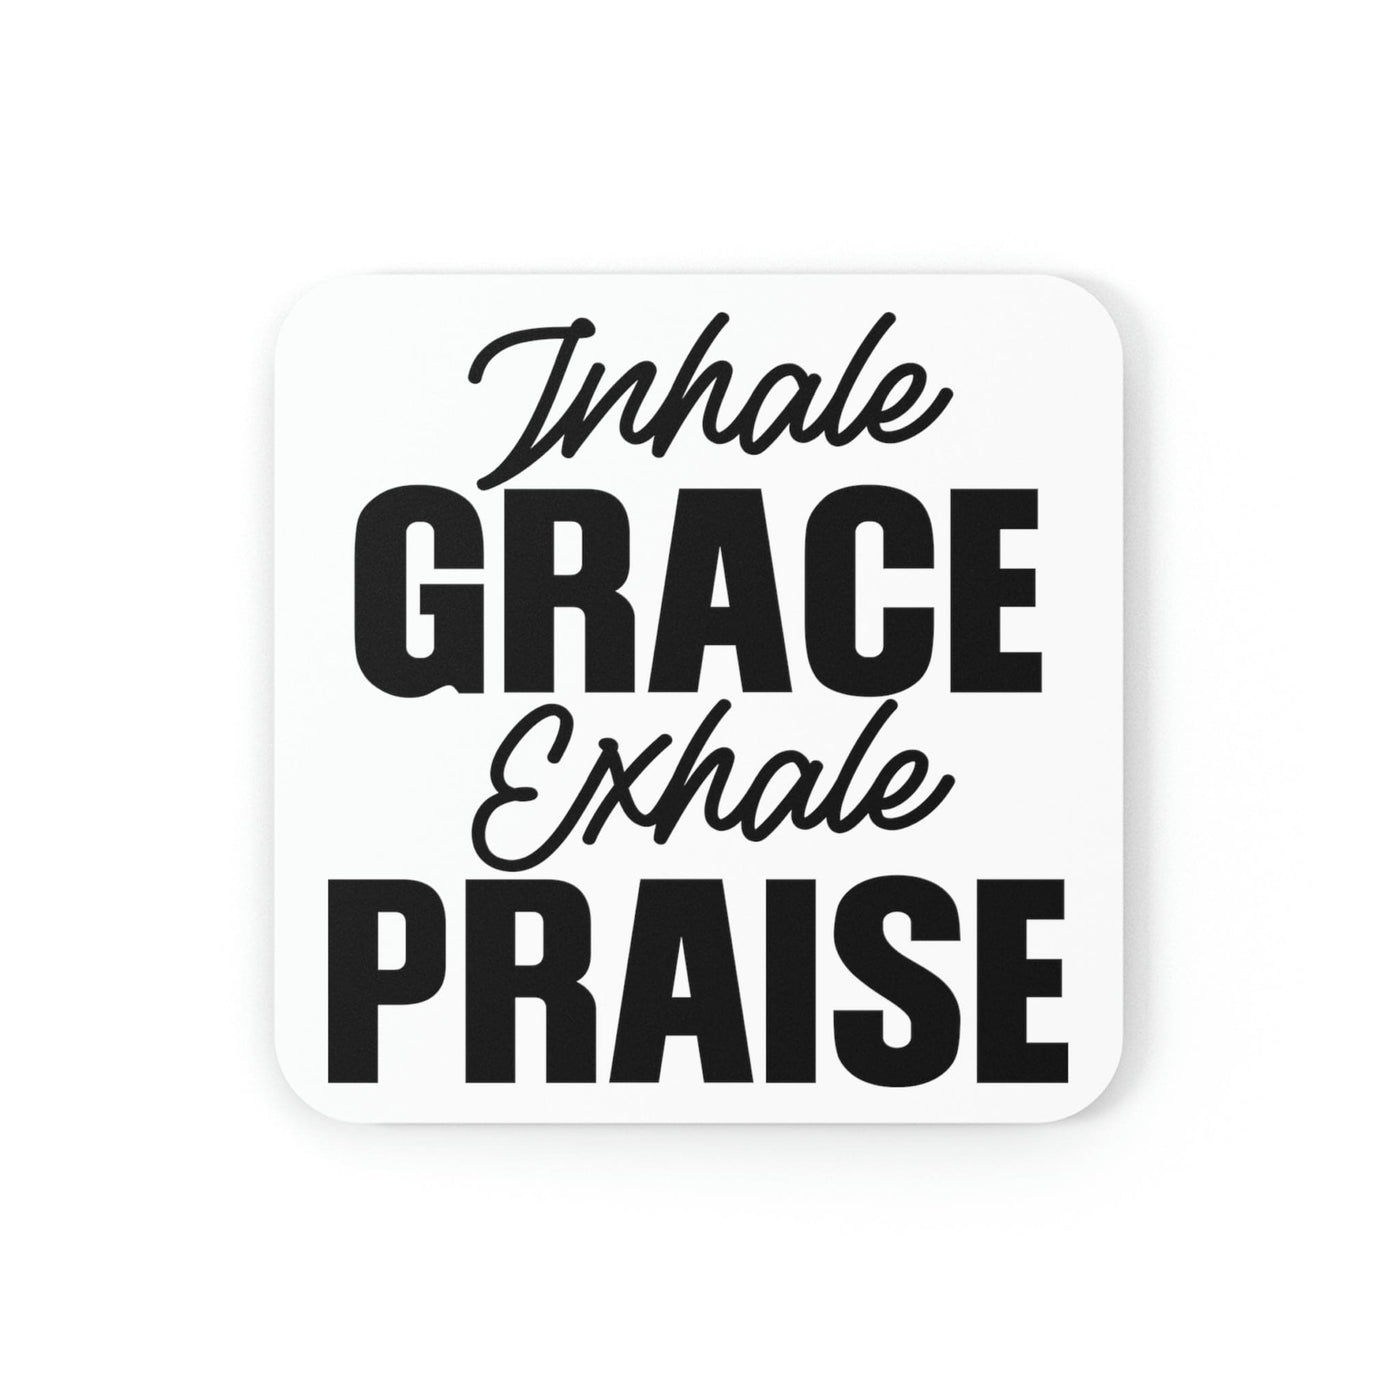 Home Decor Coaster Set - 4 Piece Home/office Inhale Grace Exhale Praise